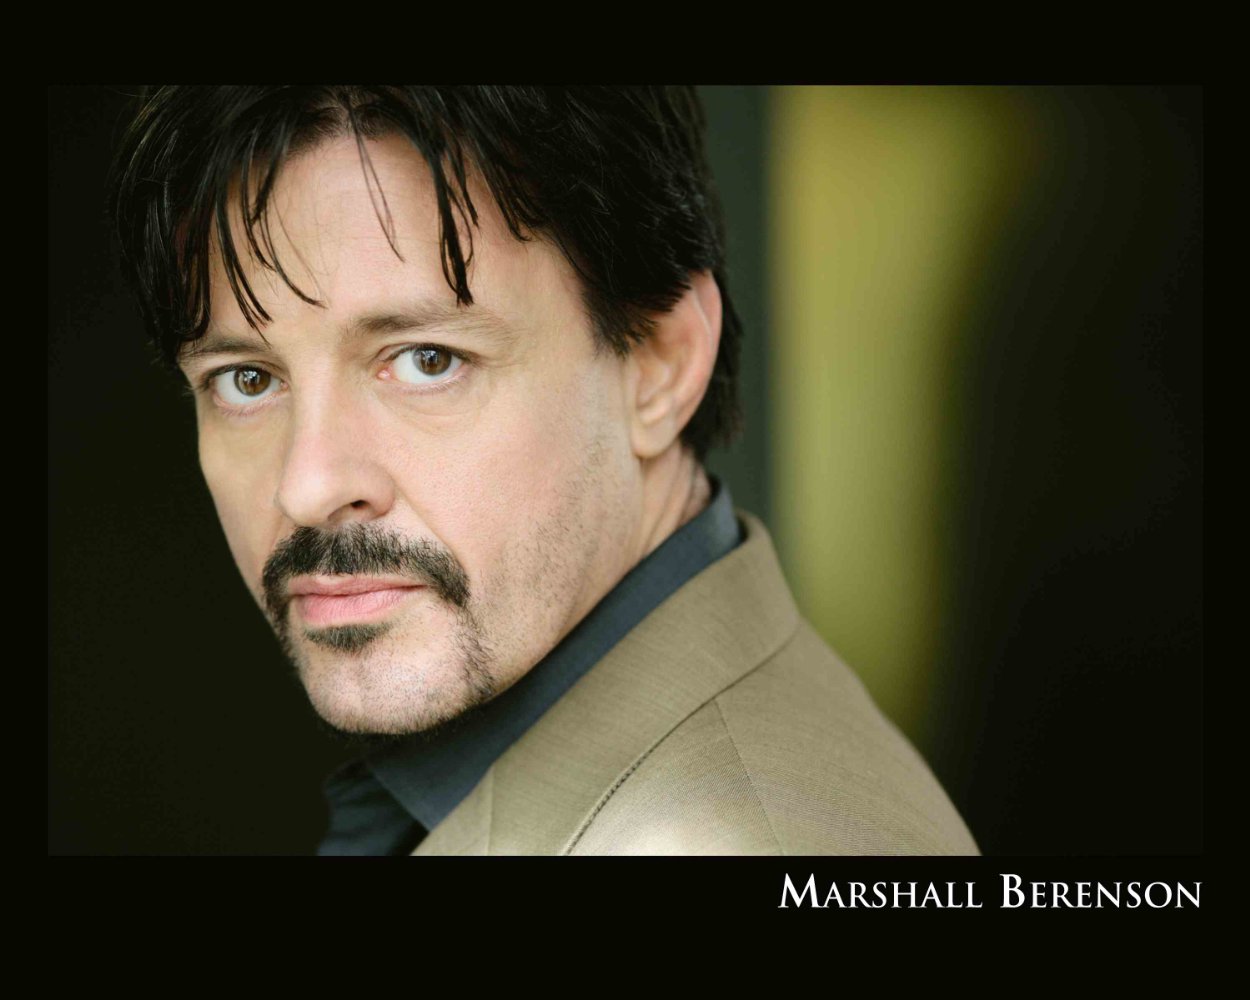 Marshall Berenson